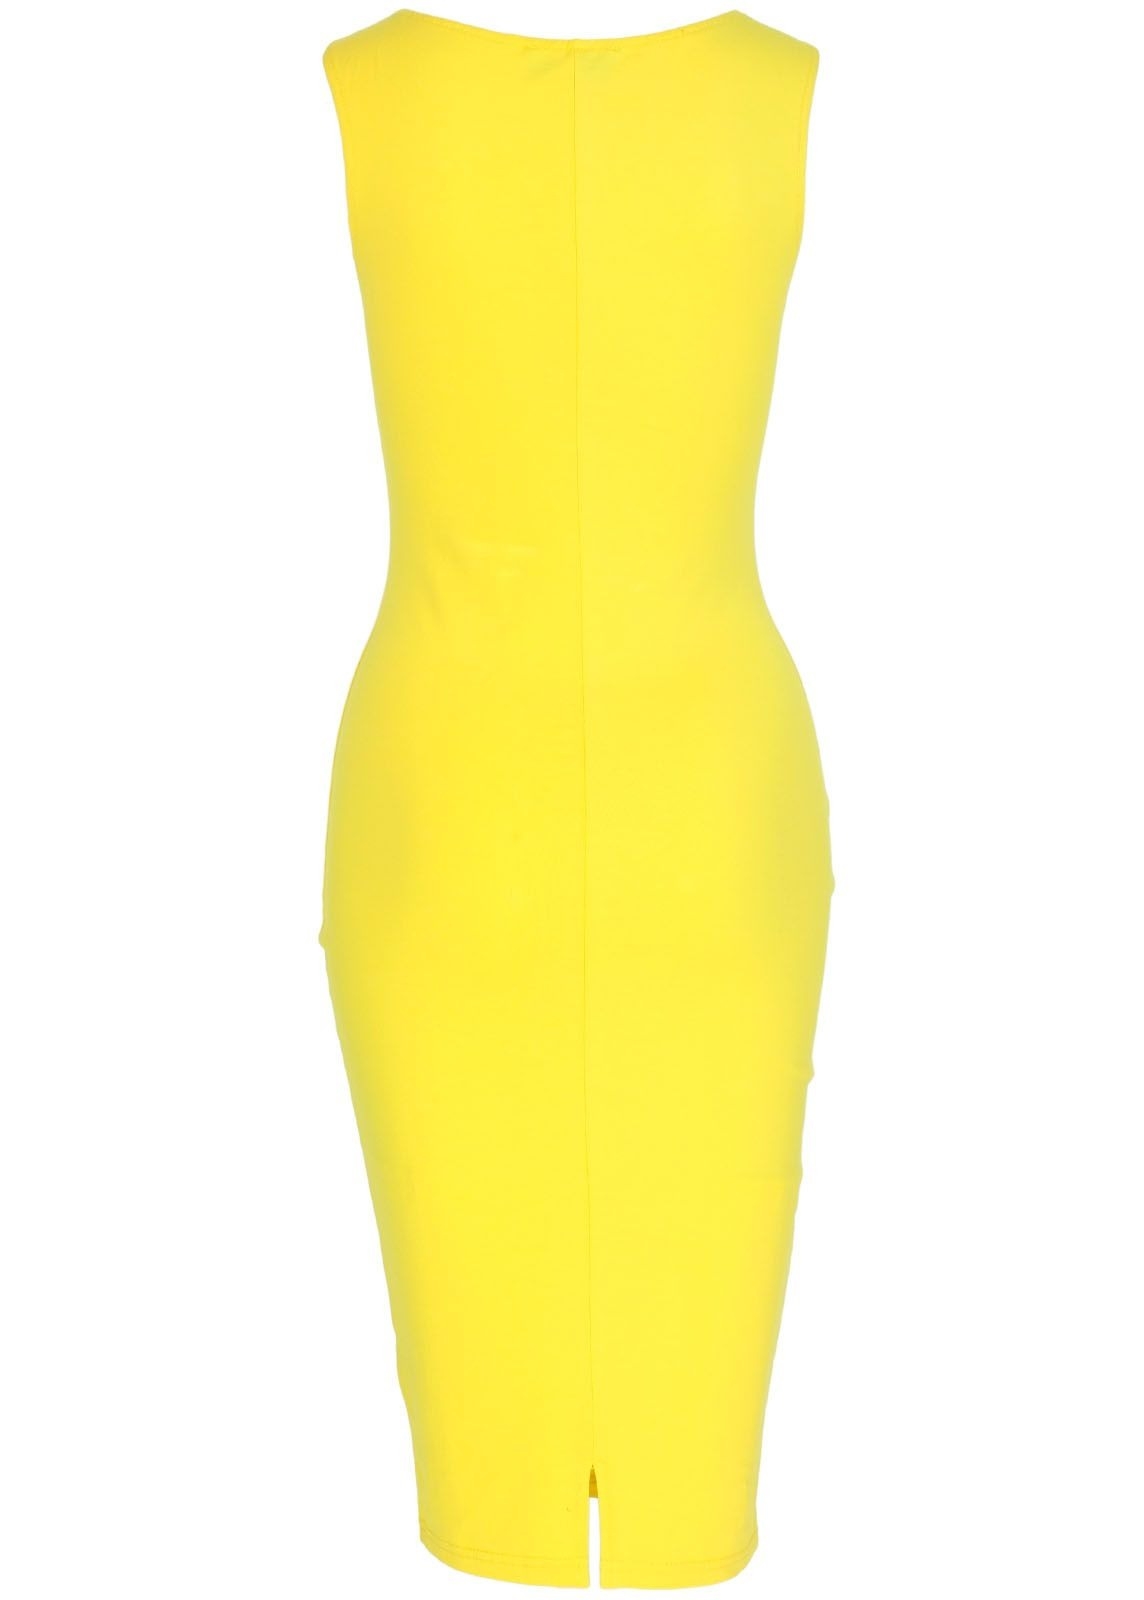 13 Erstaunlich Kleid Gelb Spezialgebiet17 Leicht Kleid Gelb Spezialgebiet